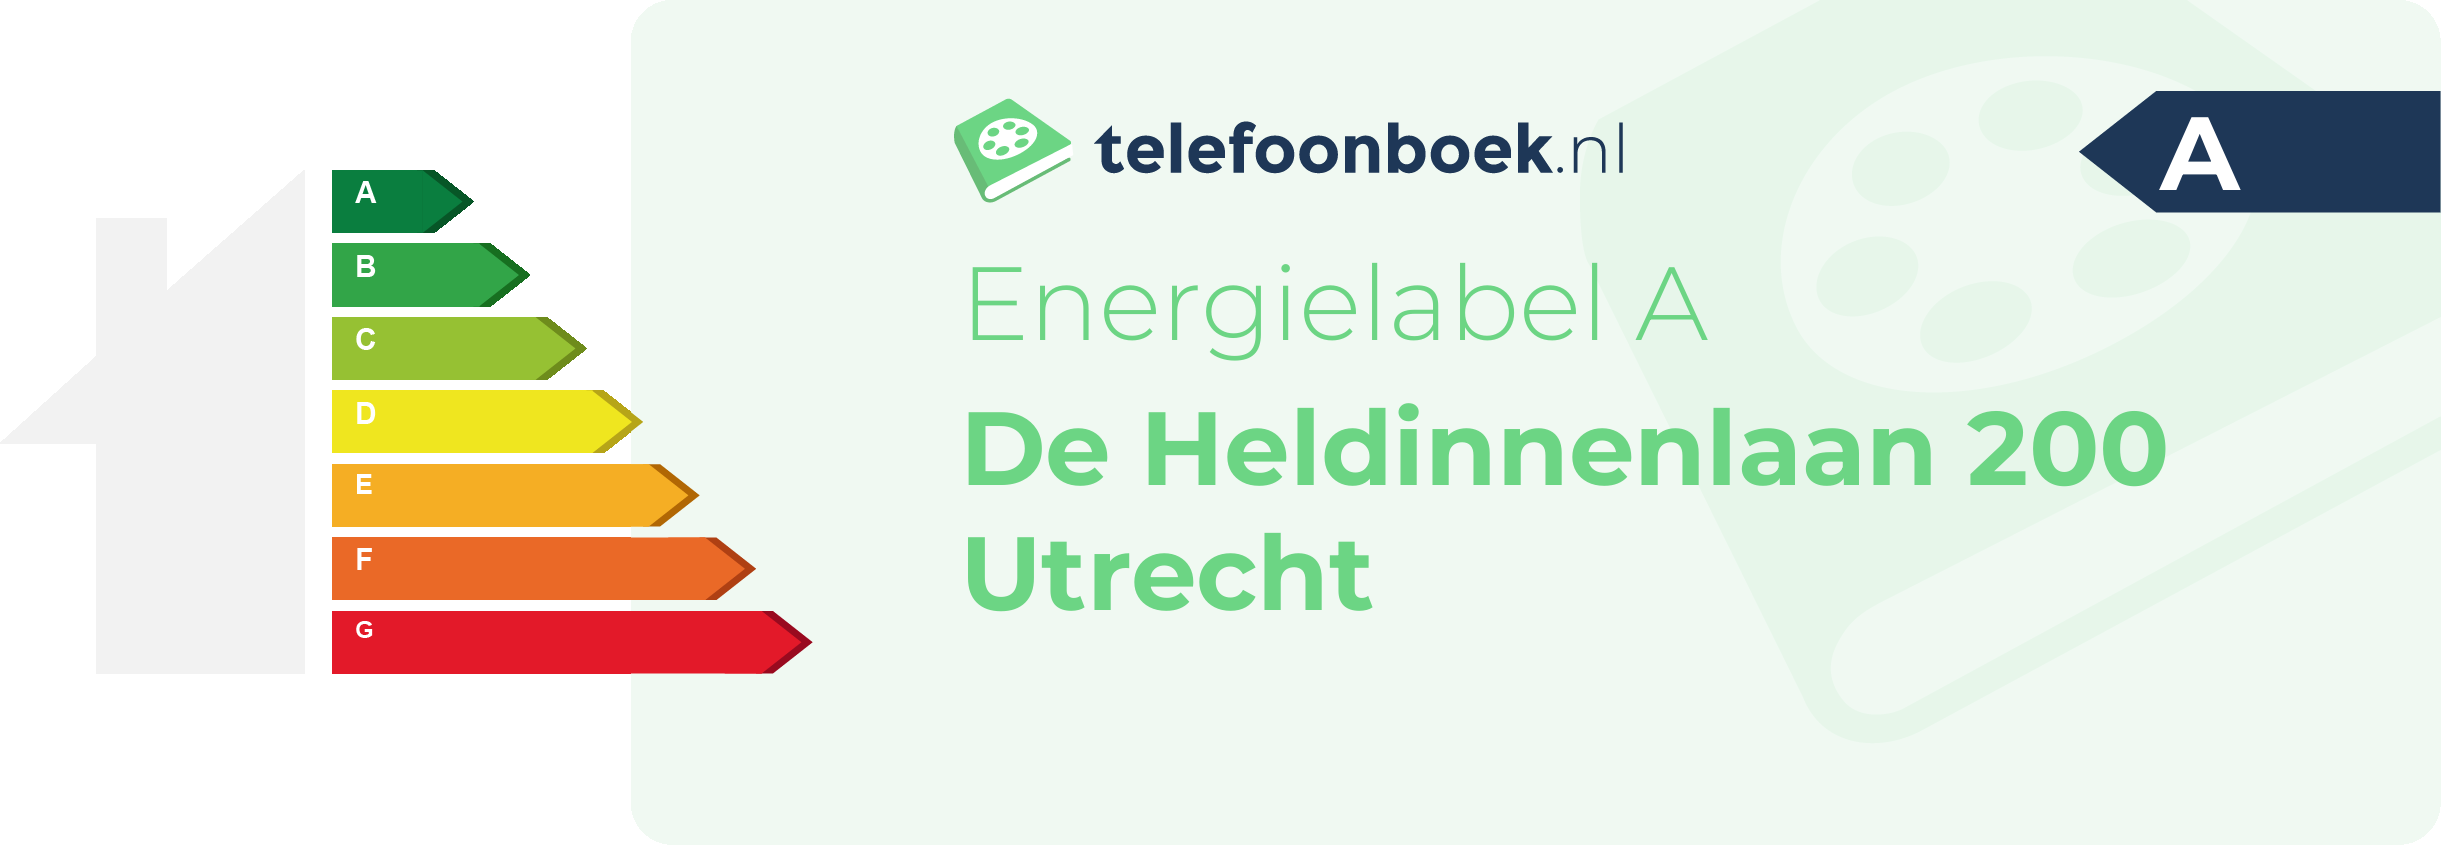 Energielabel De Heldinnenlaan 200 Utrecht